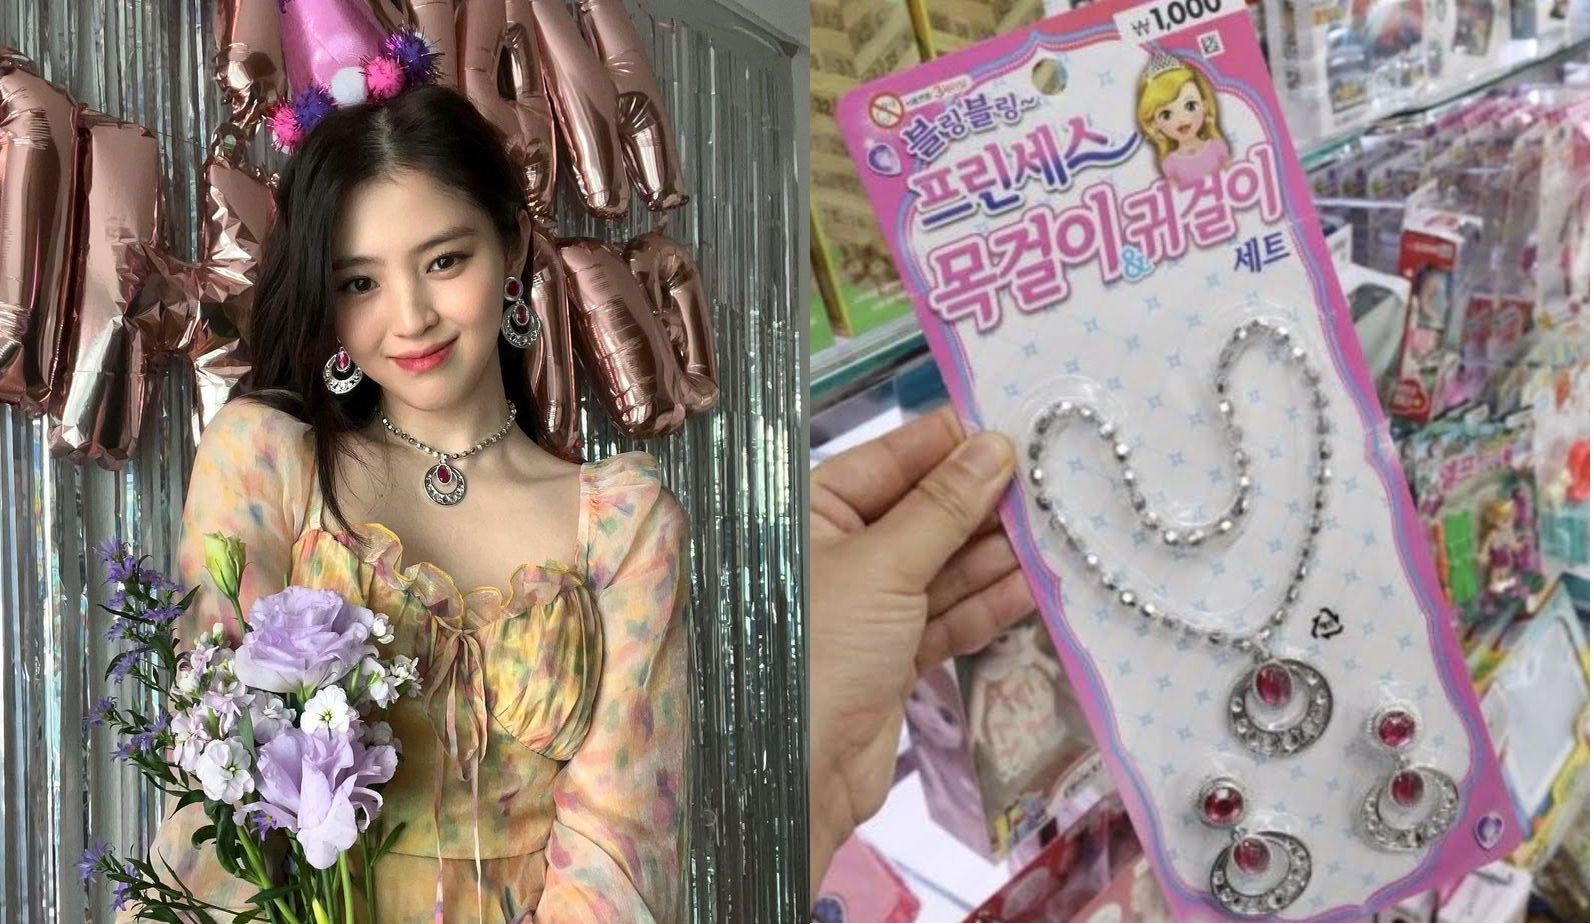 Kalung Han So Hee di Perayaan Ulang Tahun